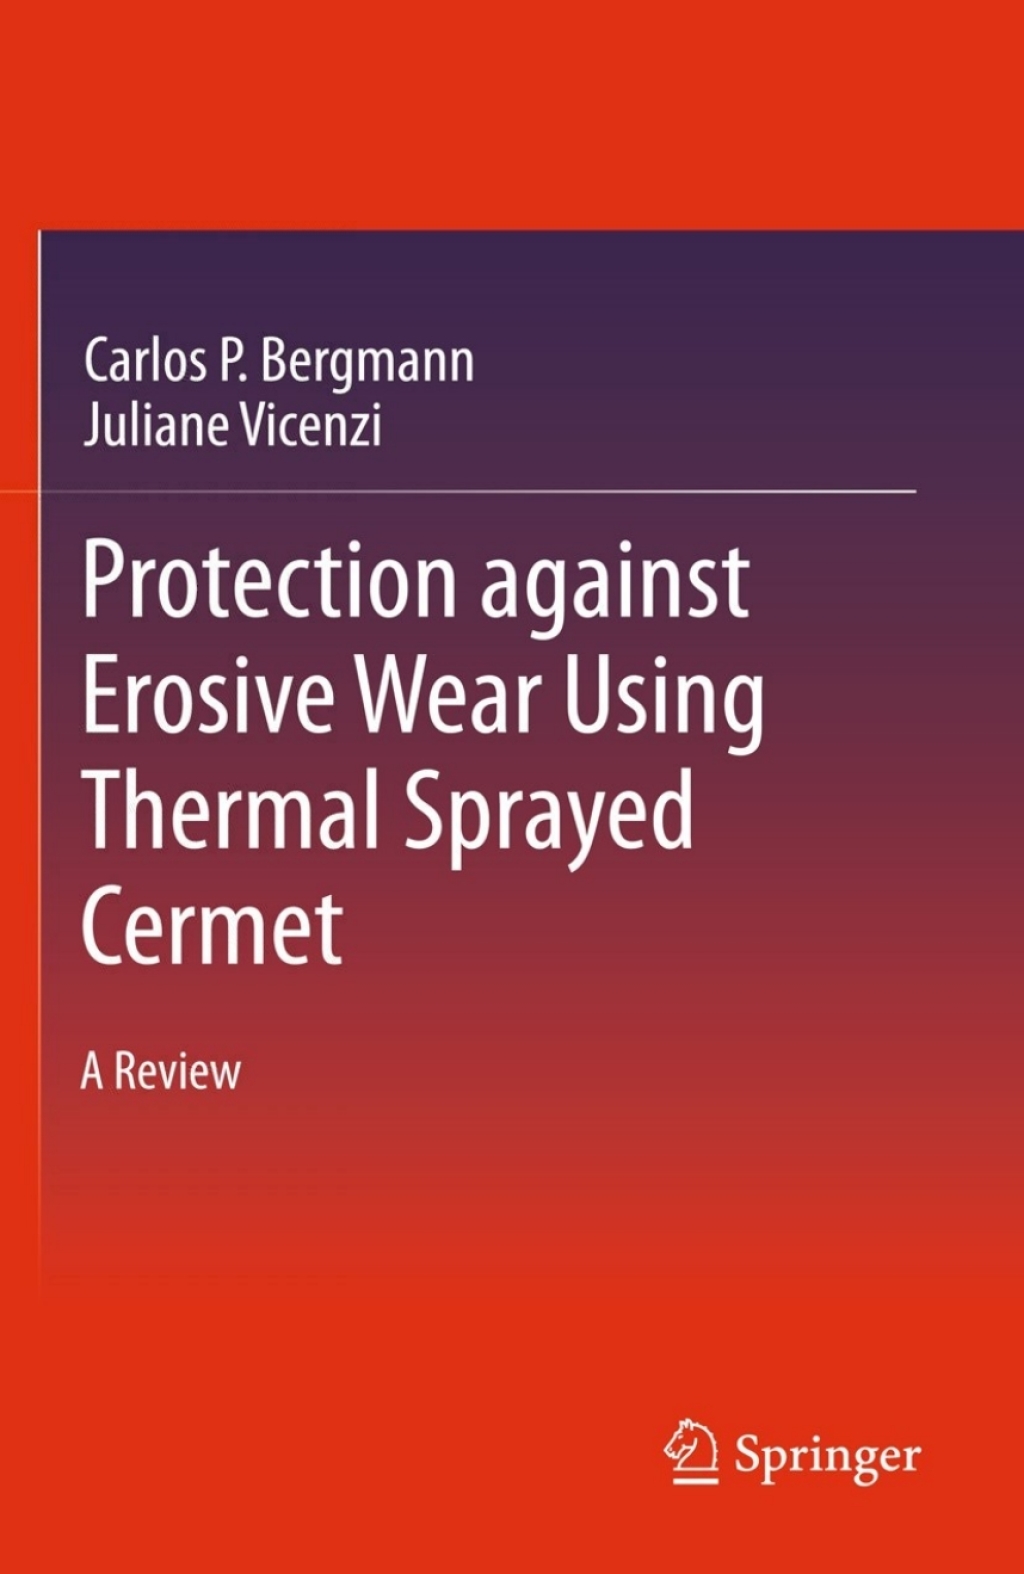 Protection against Erosive Wear using Thermal Sprayed Cermet (eBook Rental) - Carlos P. Bergmann; Juliane Vicenzi,